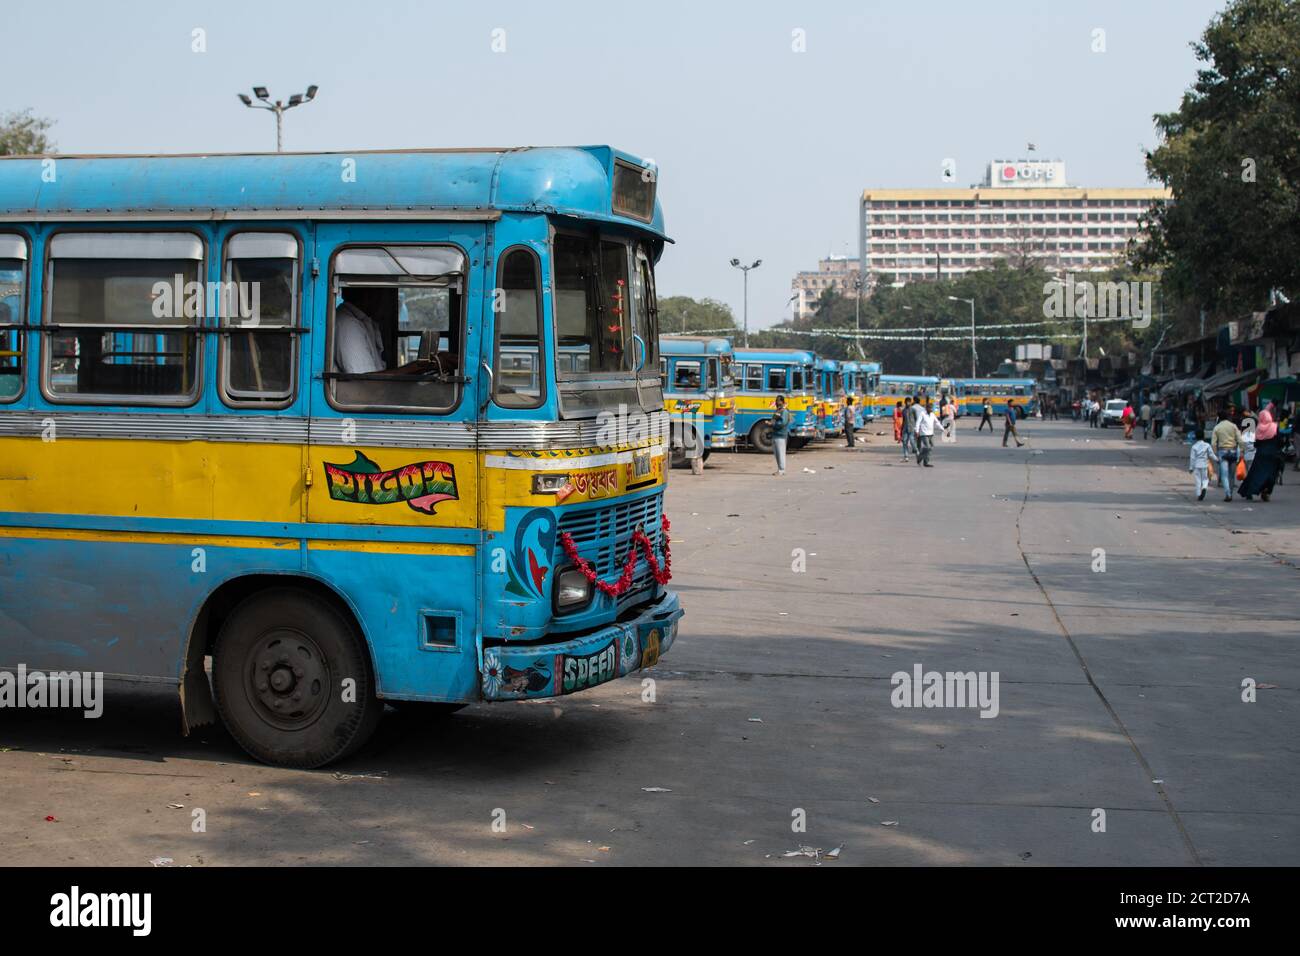 Kolkata, Inde - 1er février 2020 : plusieurs personnes non identifiées passent devant les bus publics traditionnels turquoise et jaune garés à une gare routière Banque D'Images